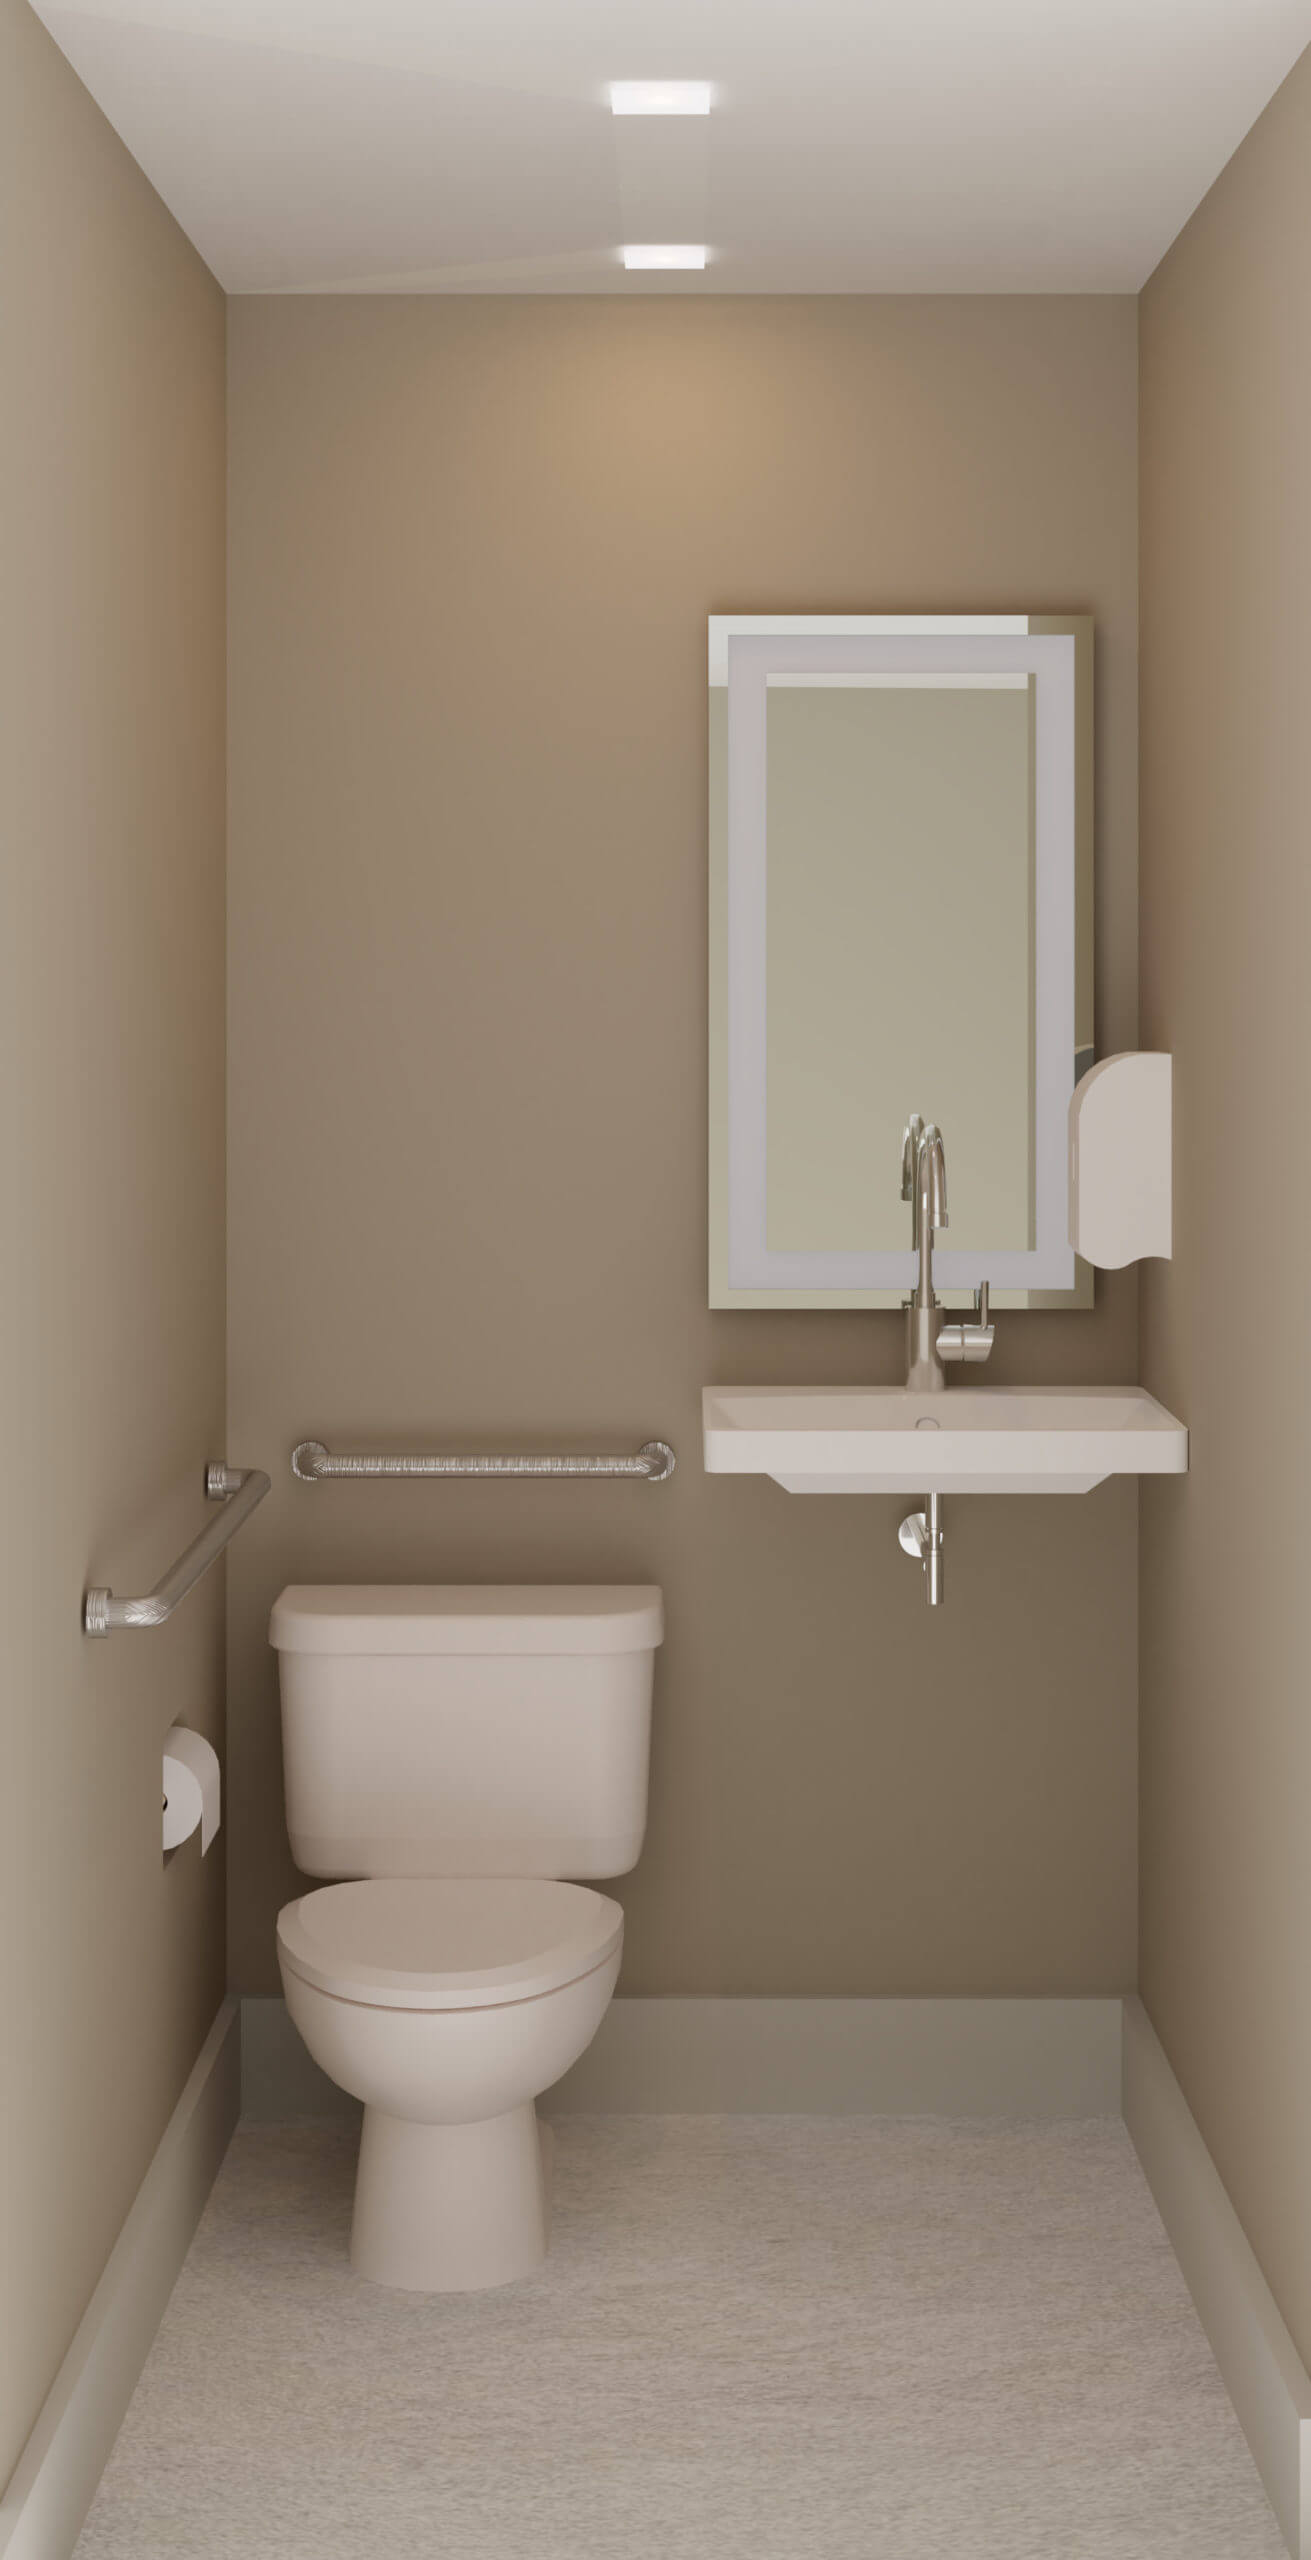 Public_Bathroom-1-scaled